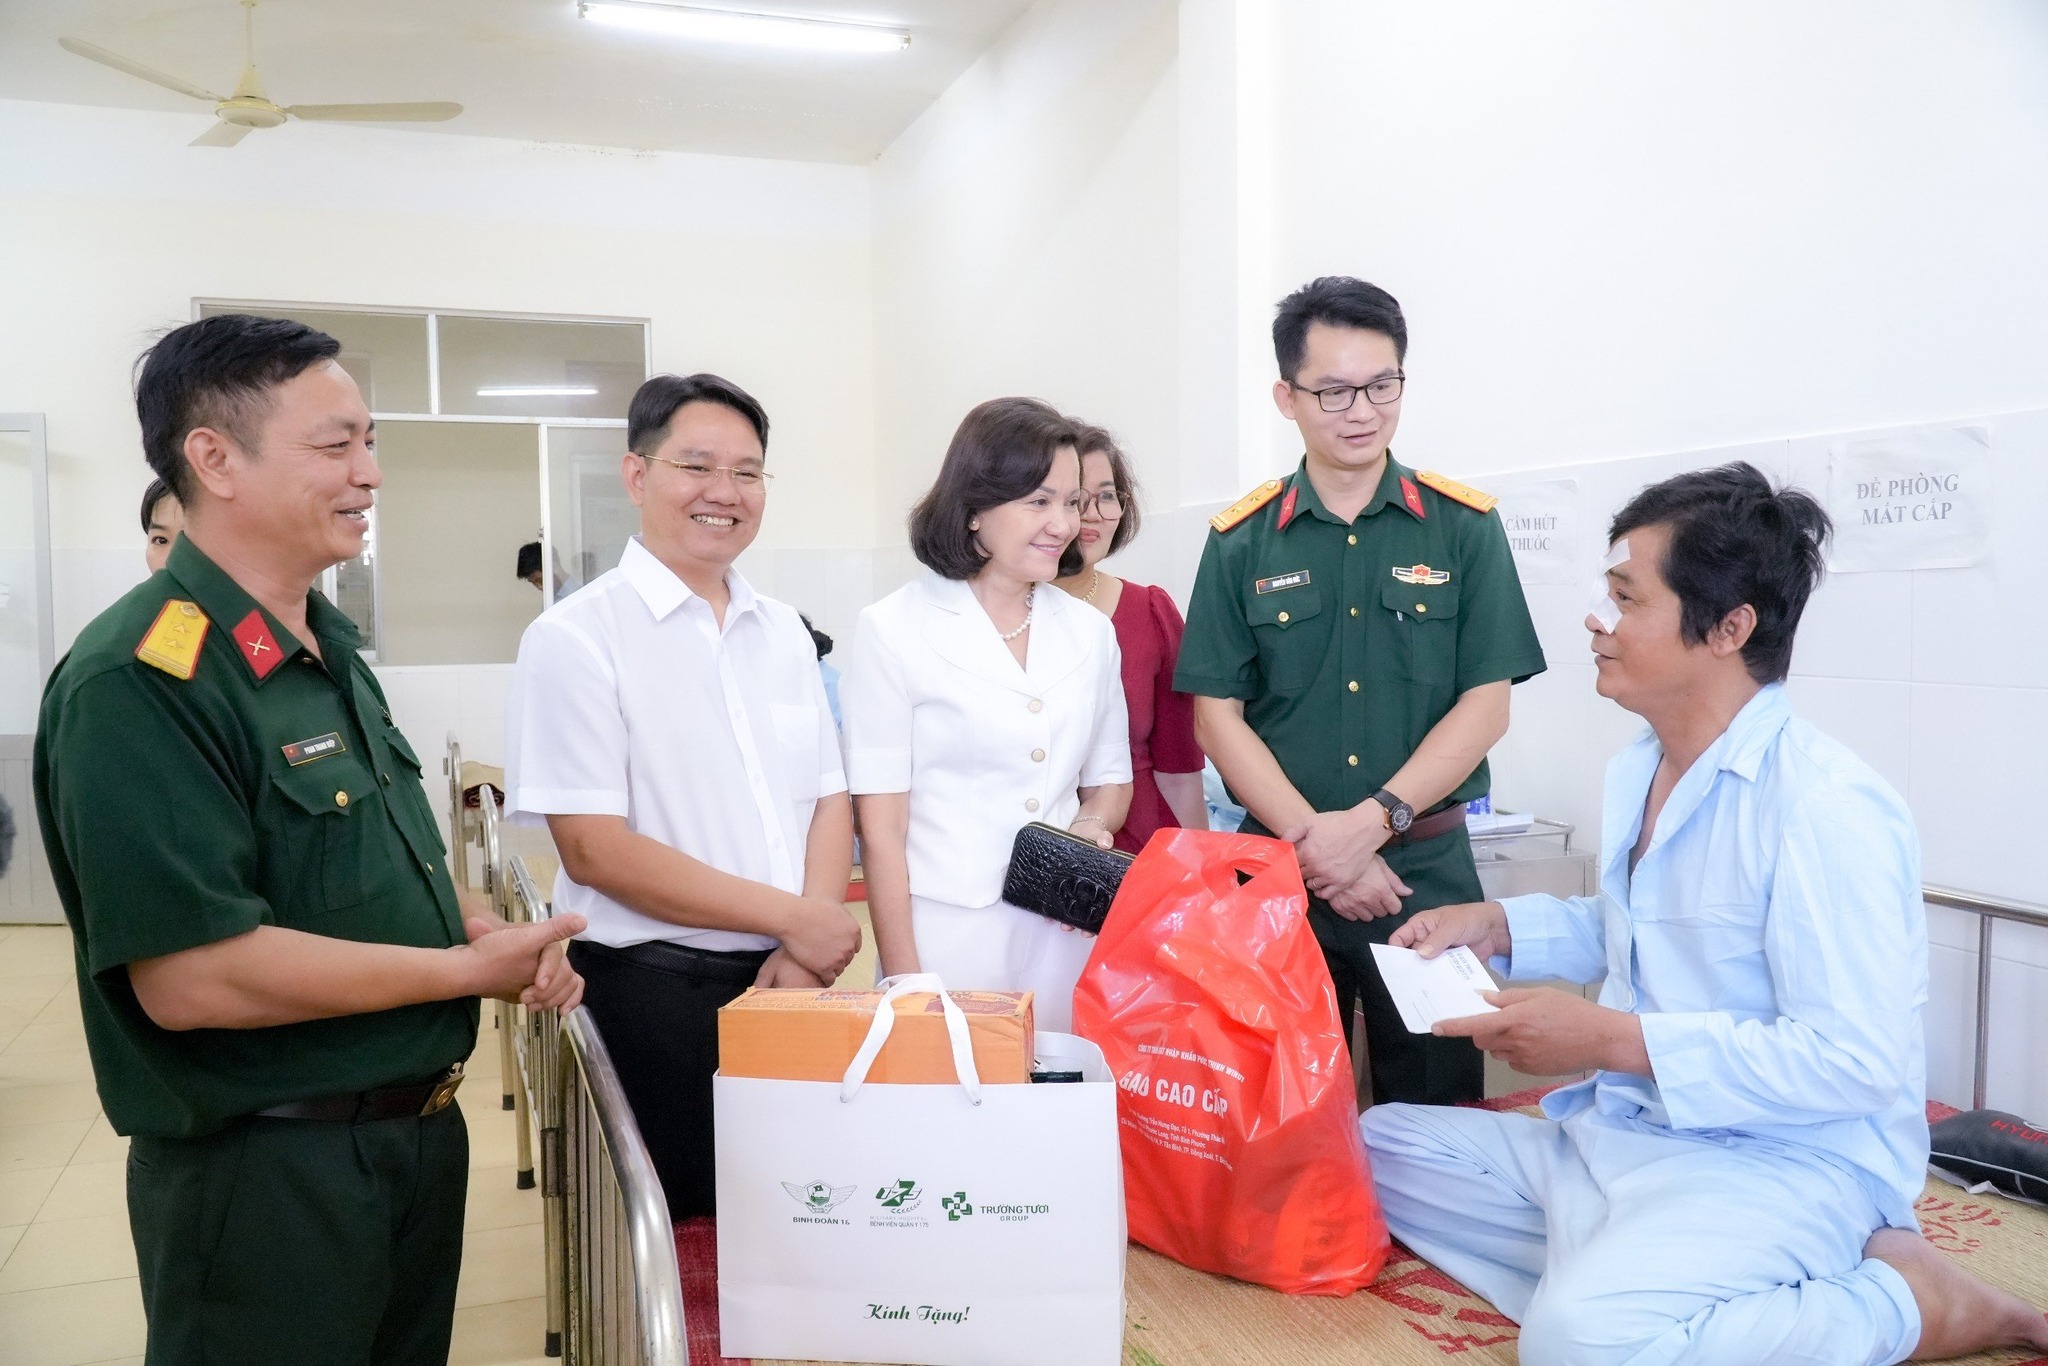 Chương trình Rạng ngời đôi mắt Việt Nam đem lại ánh sáng cho 47 bệnh nhân